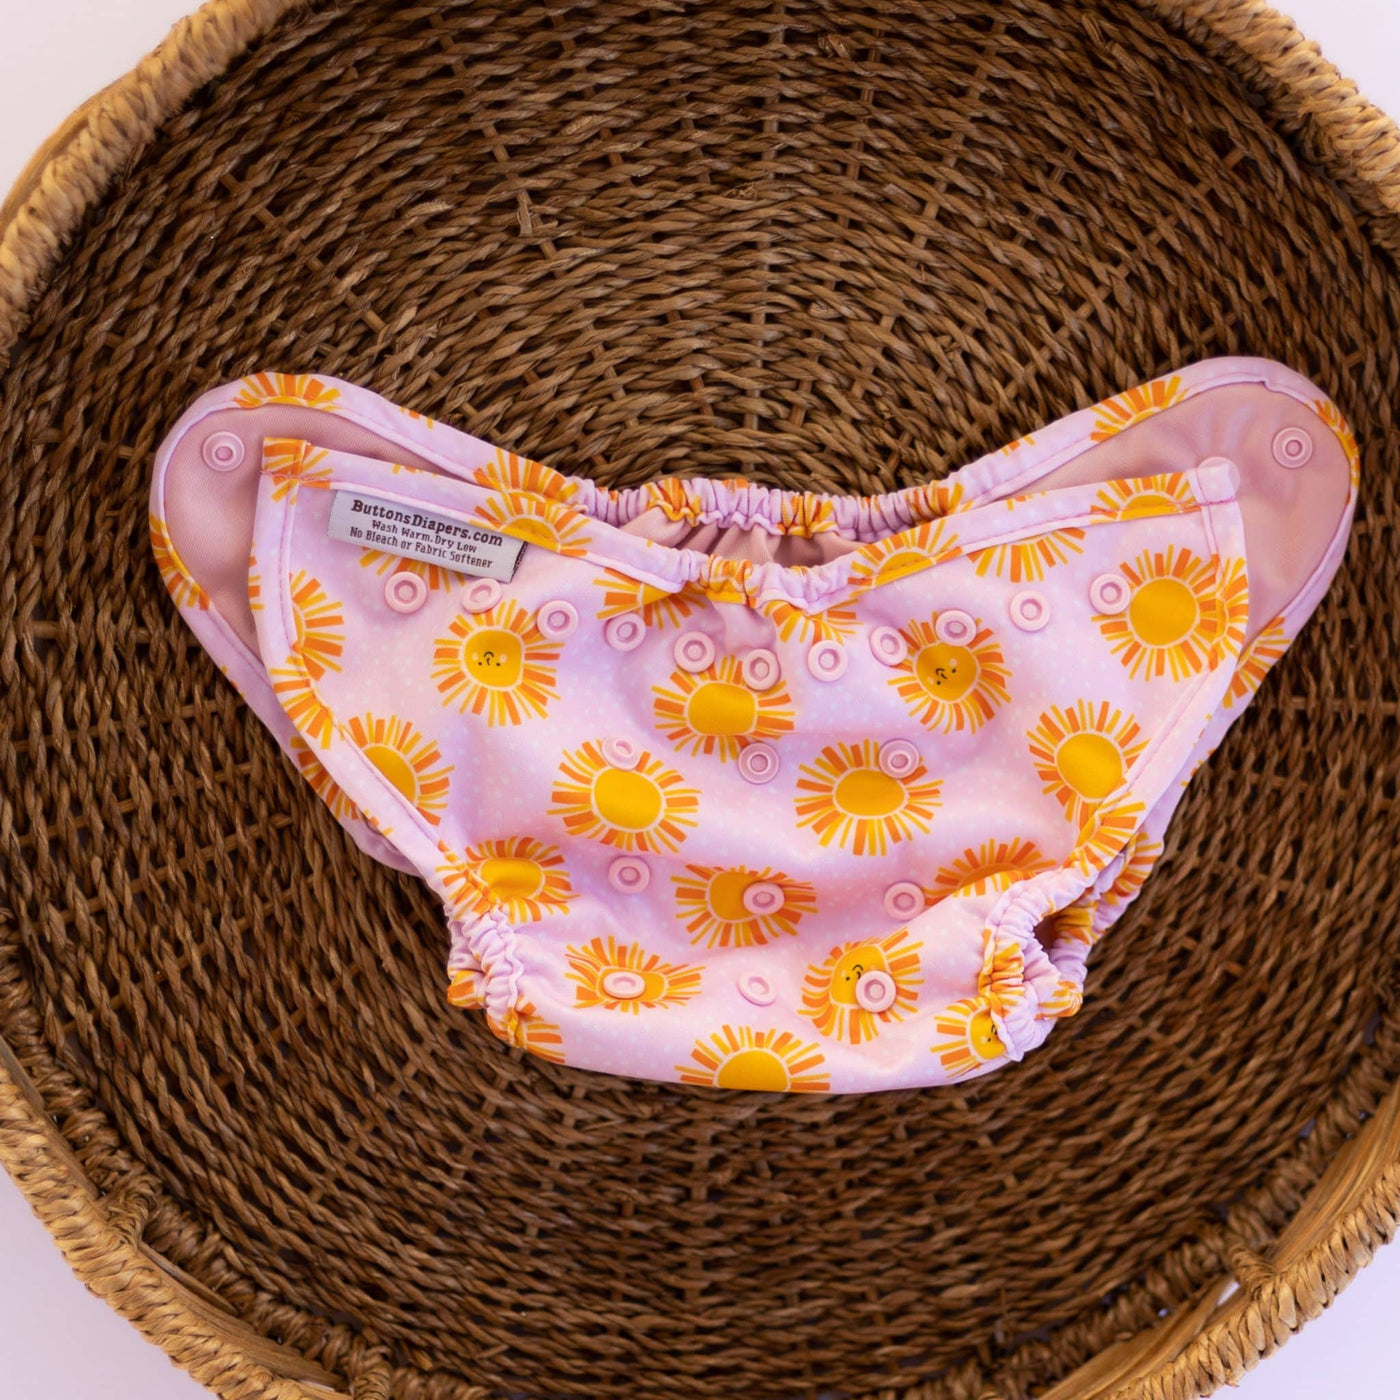 Buttons Diaper SiO Cover Newborn - Sunny